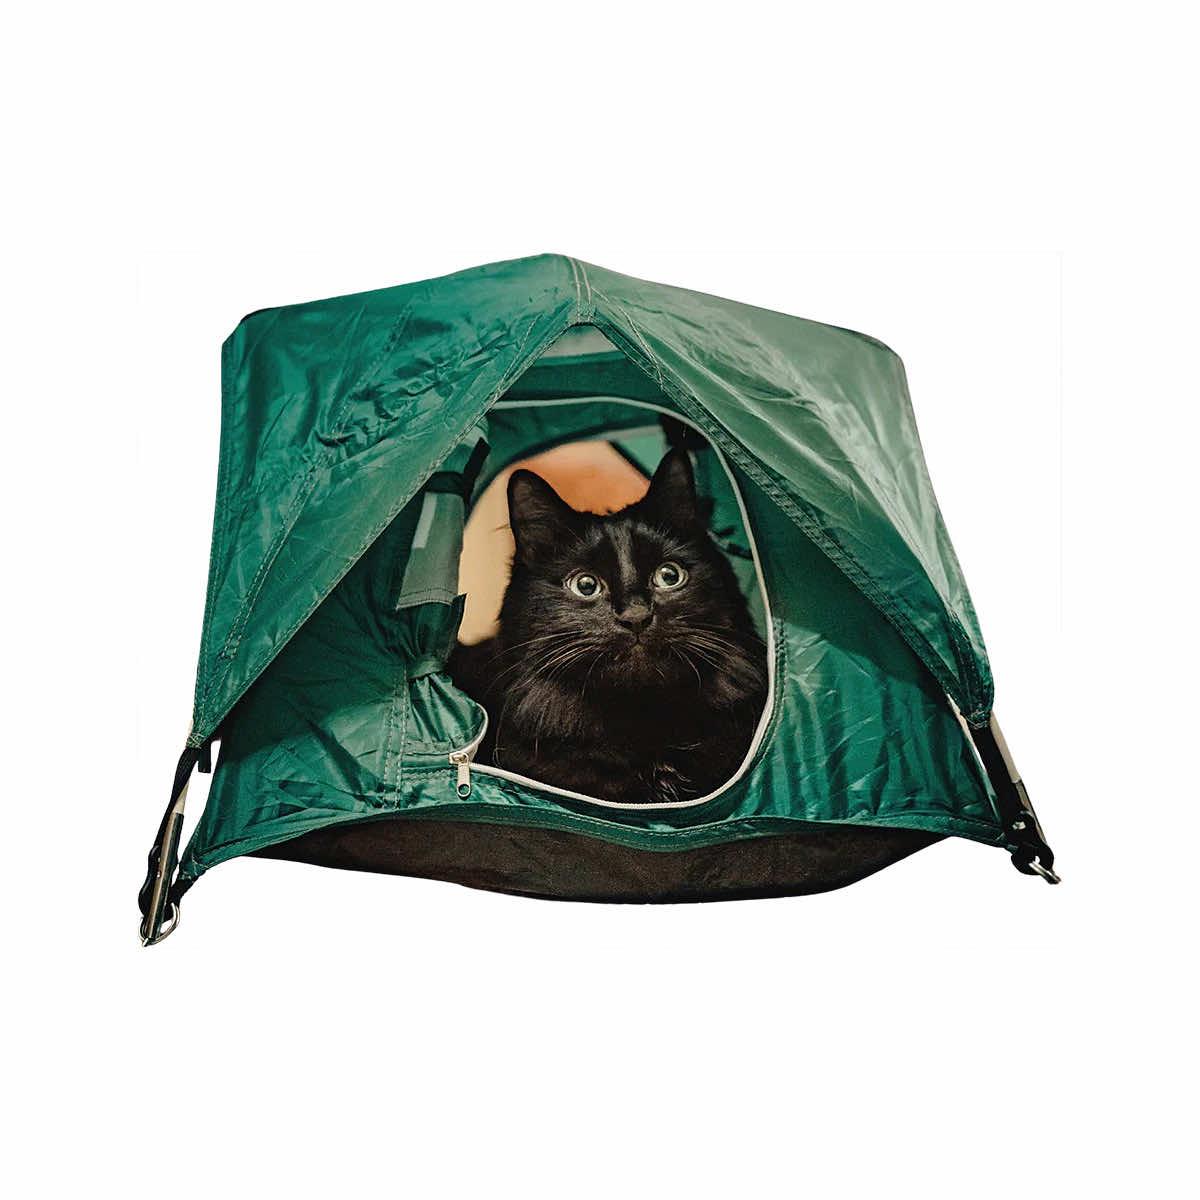 Tiny Tents Tent Accessories